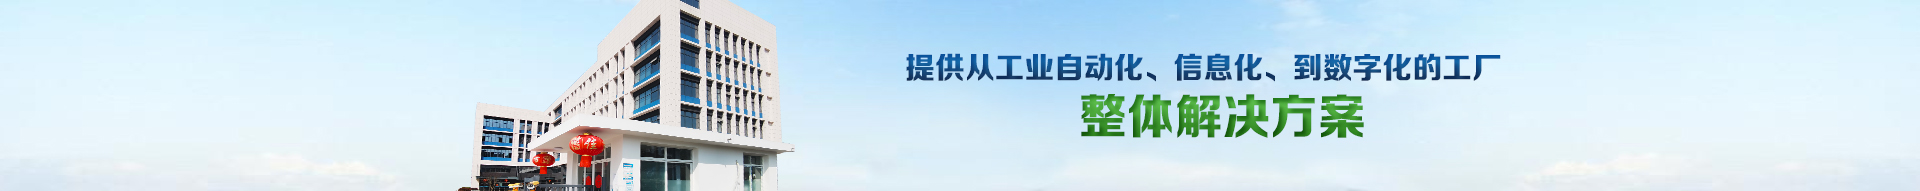 金莎娱乐官网最全网站手机版,企业荣誉,国家级高新技术企业,四川省企业技术中心